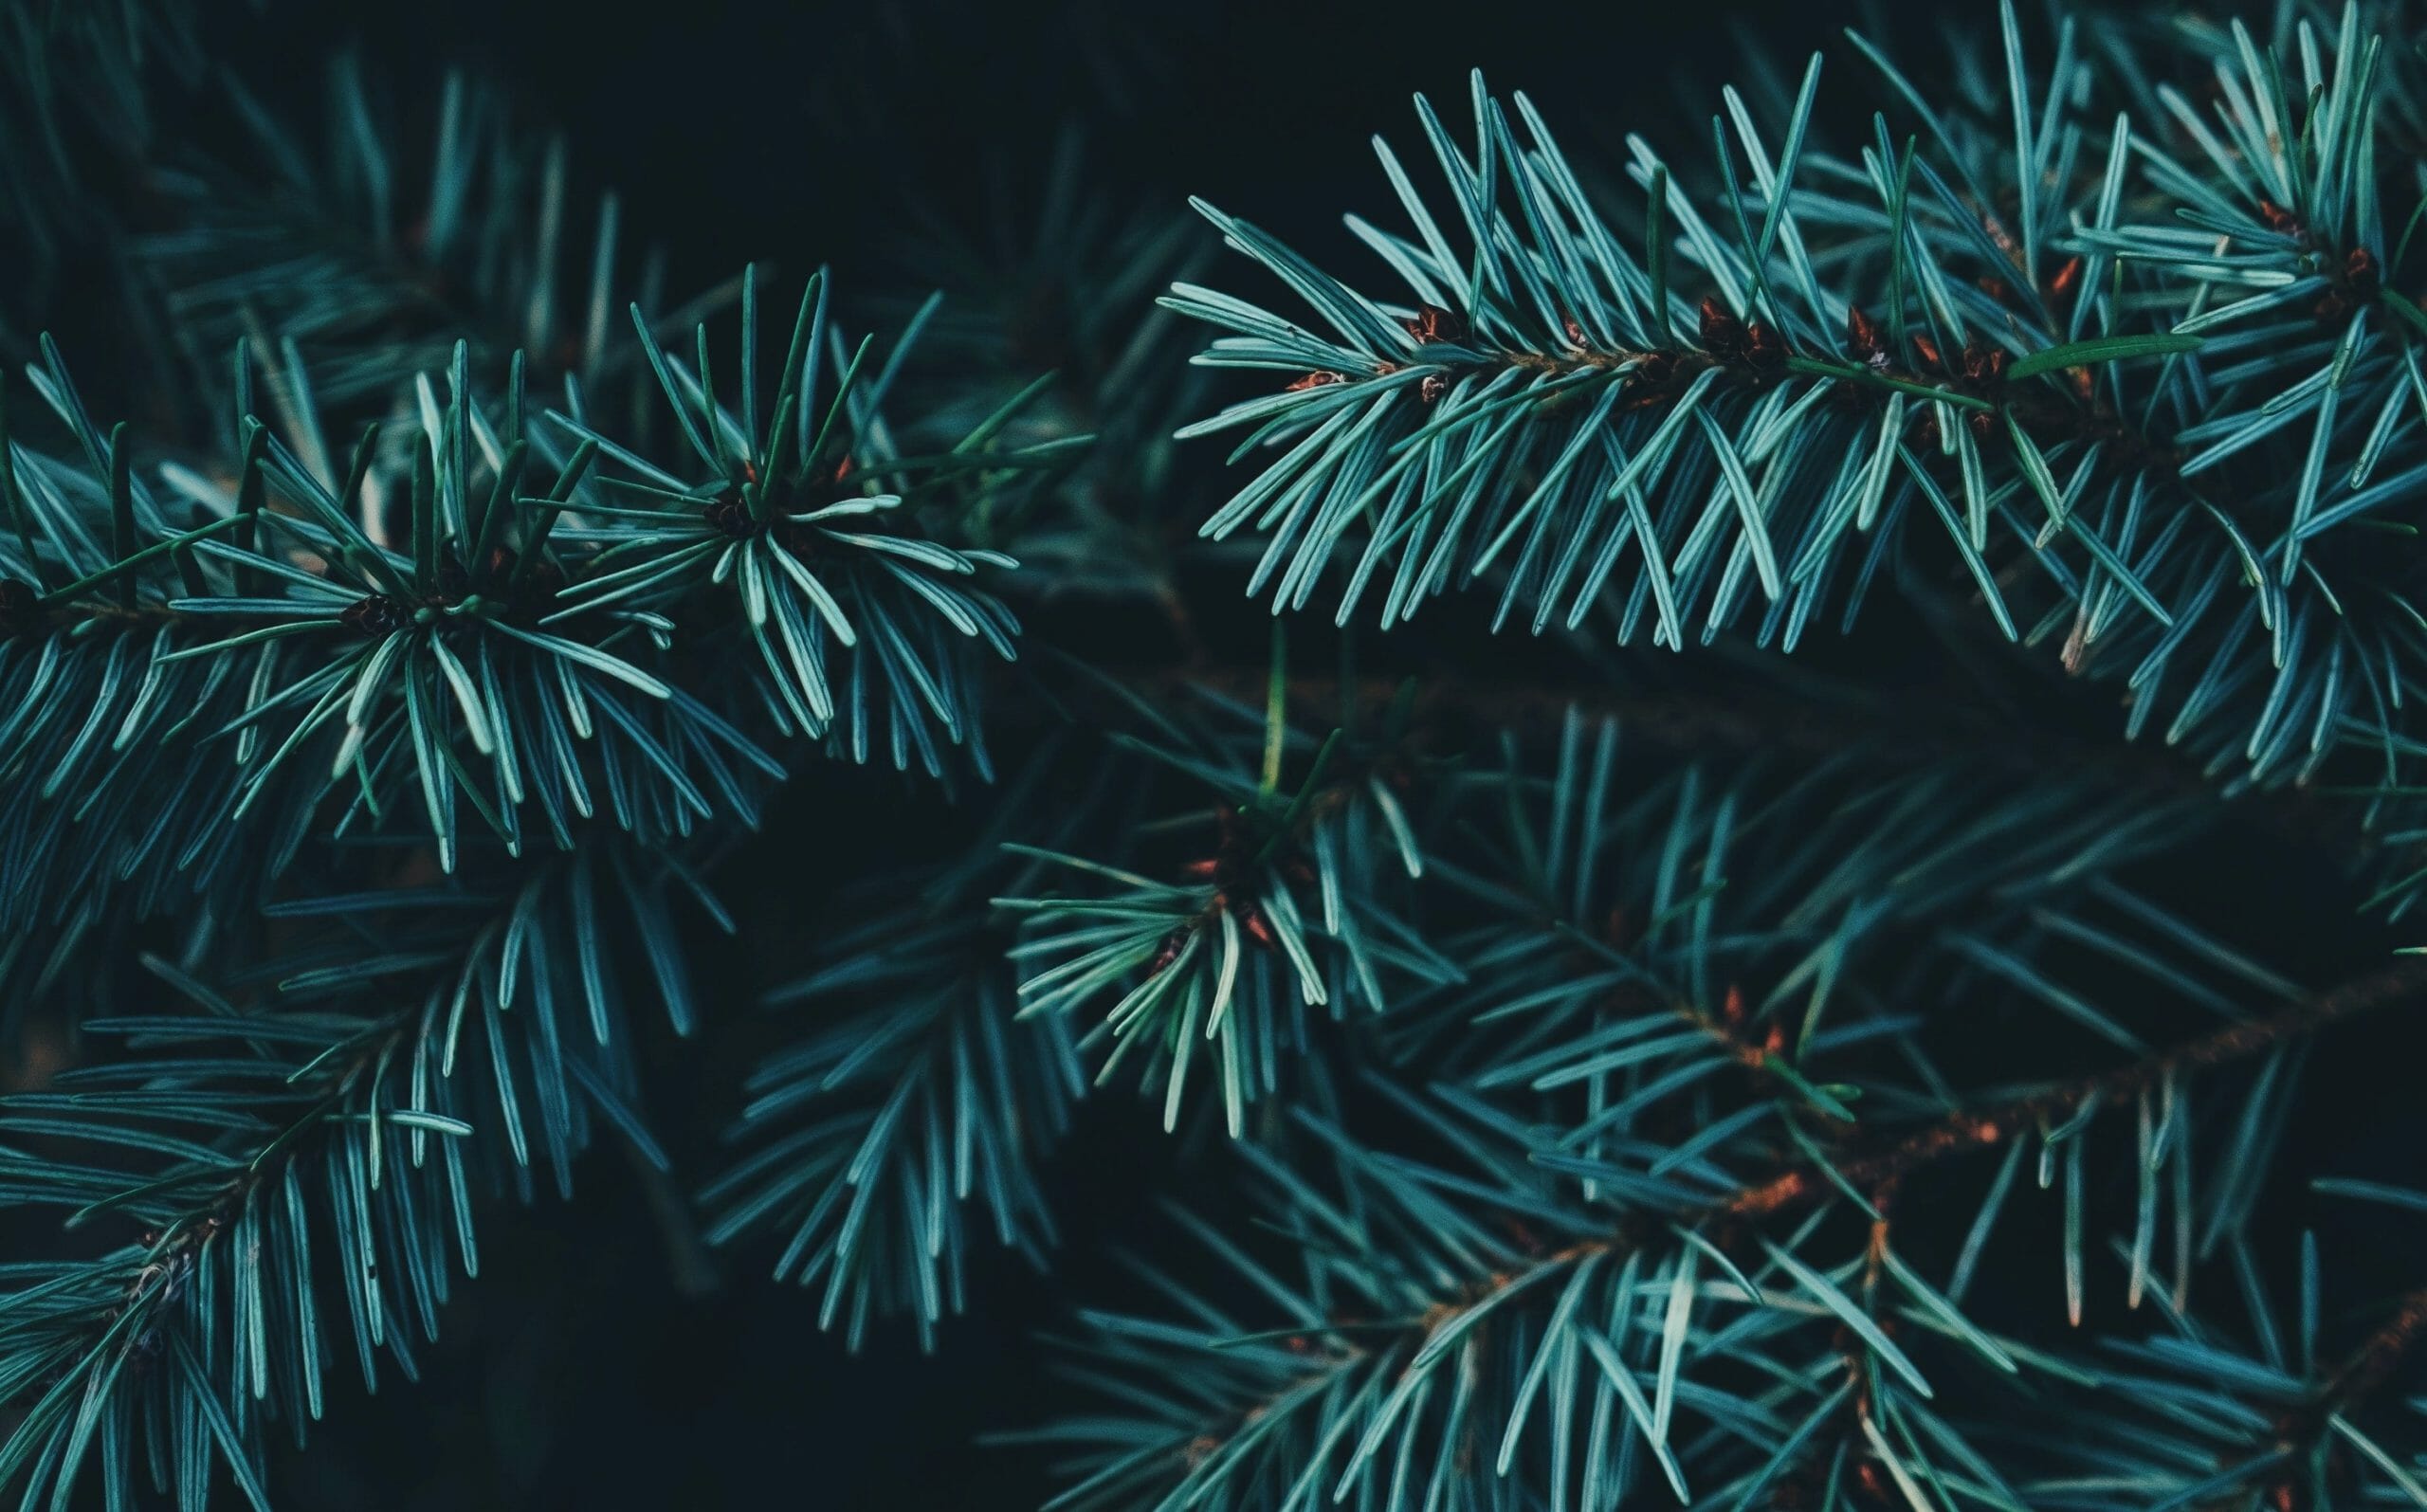 kerstboom met of zonder kluit